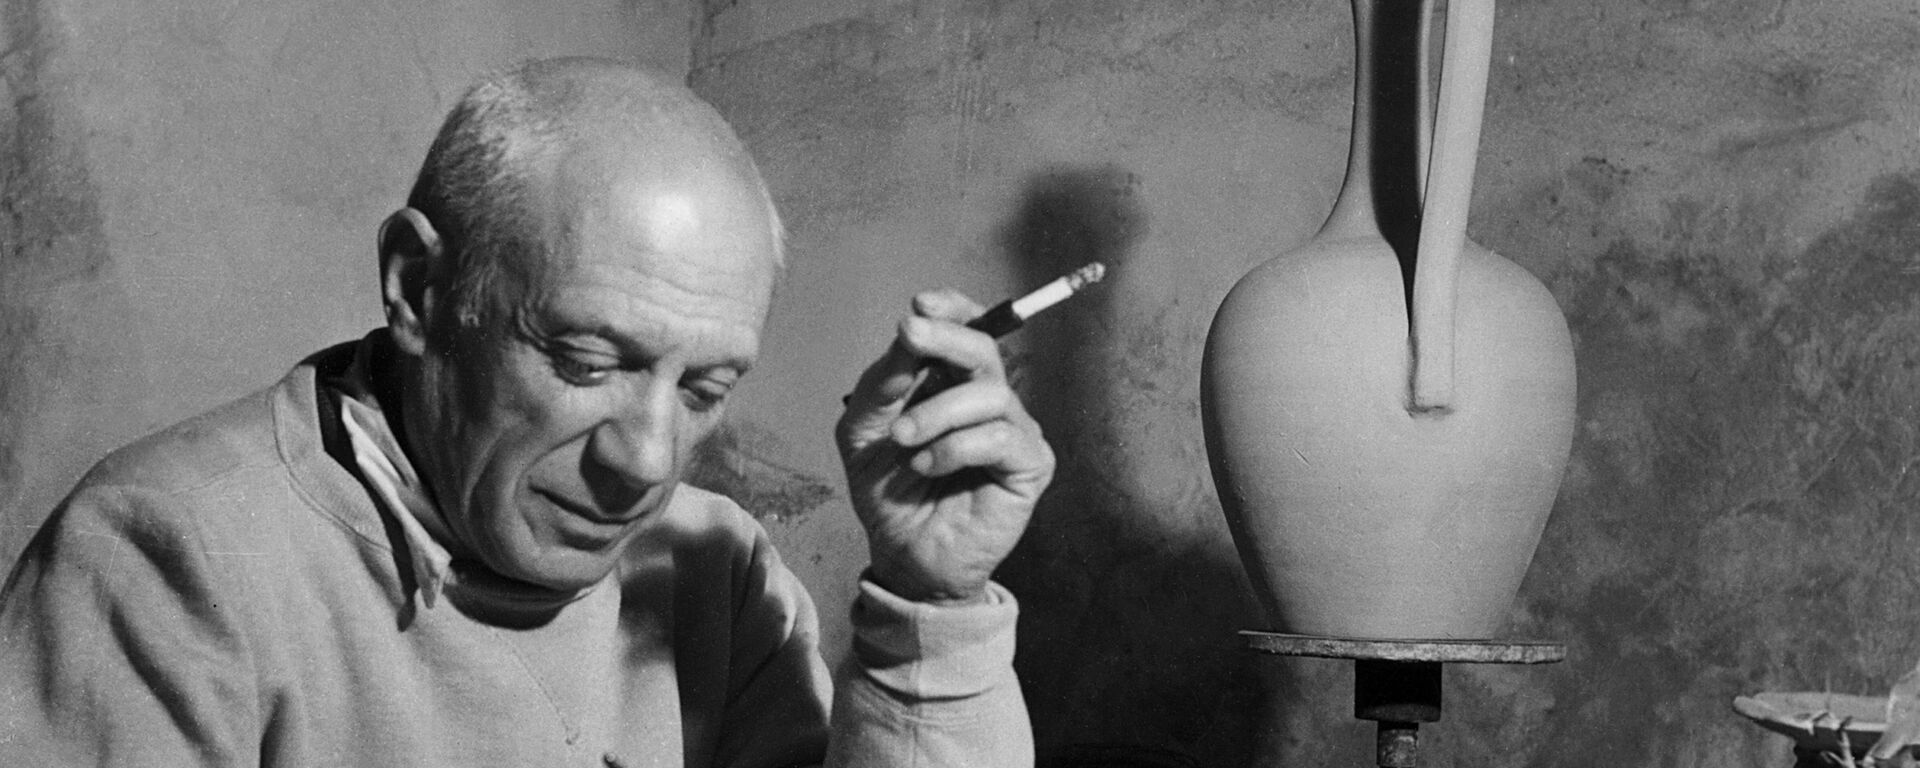 Pablo Ruiz Picasso, pintor y escultor español - Sputnik Mundo, 1920, 20.09.2021